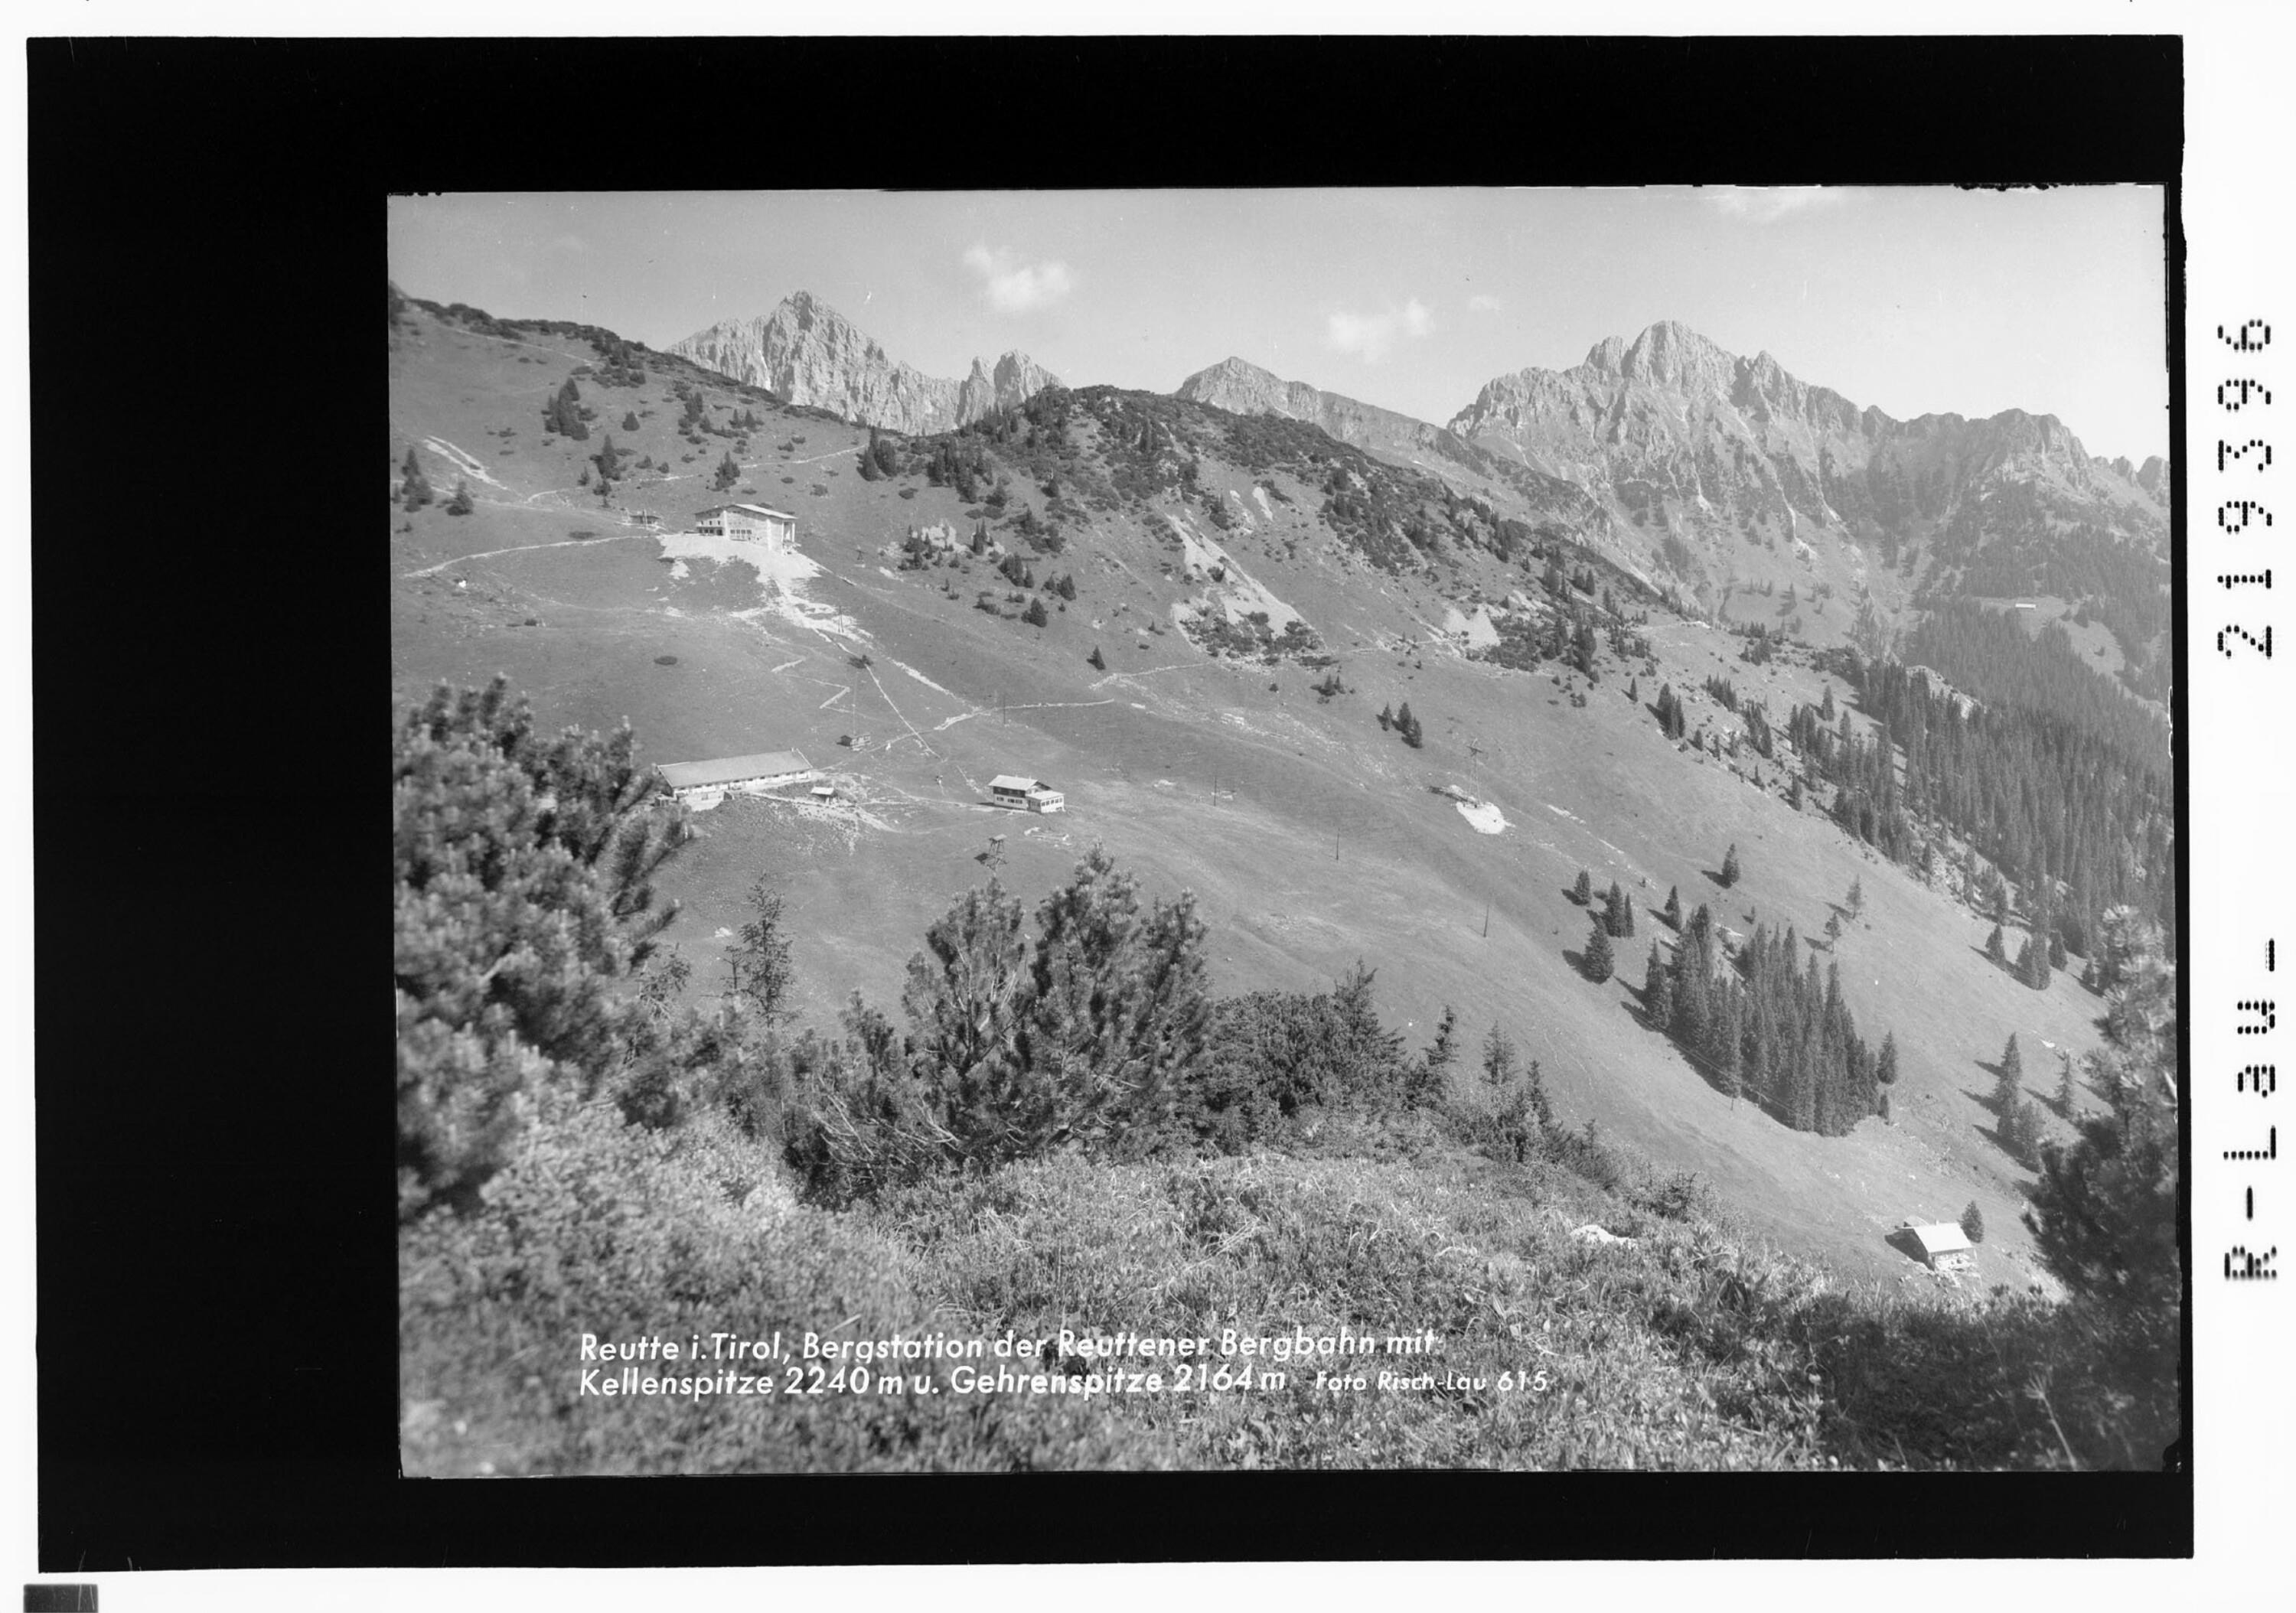 Reutte in Tirol, Bergstation der Reuttener Bergbahn mit Kellenspitze 2240 m und Gehrenspitze 2164 m></div>


    <hr>
    <div class=